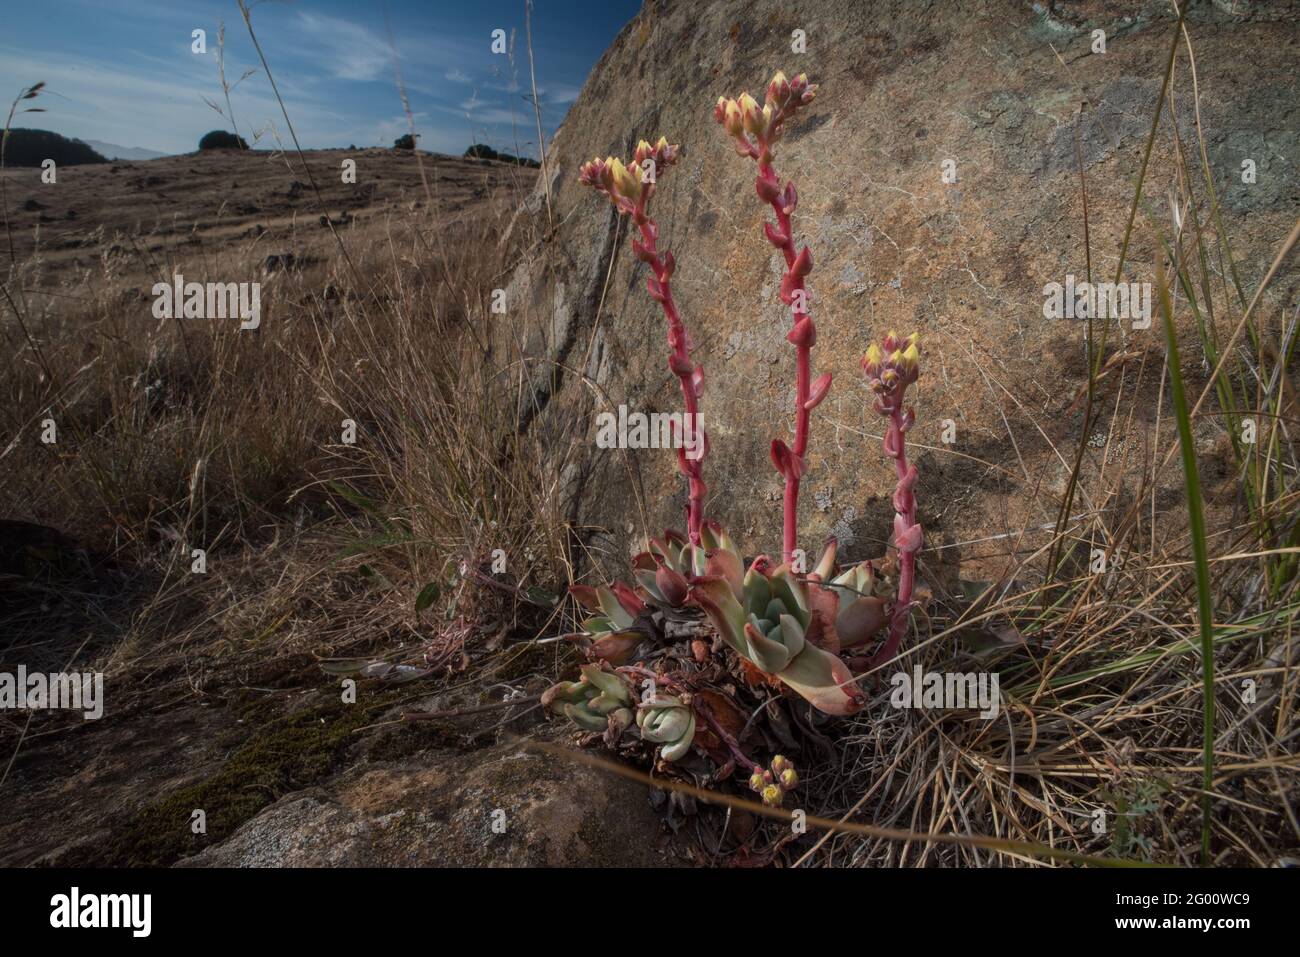 La laitue Bluff (Dudleya farinosa) est une plante succulente qui pousse en Californie, elle est parfois ciblée pour le braconnage et la collecte illégale. Banque D'Images